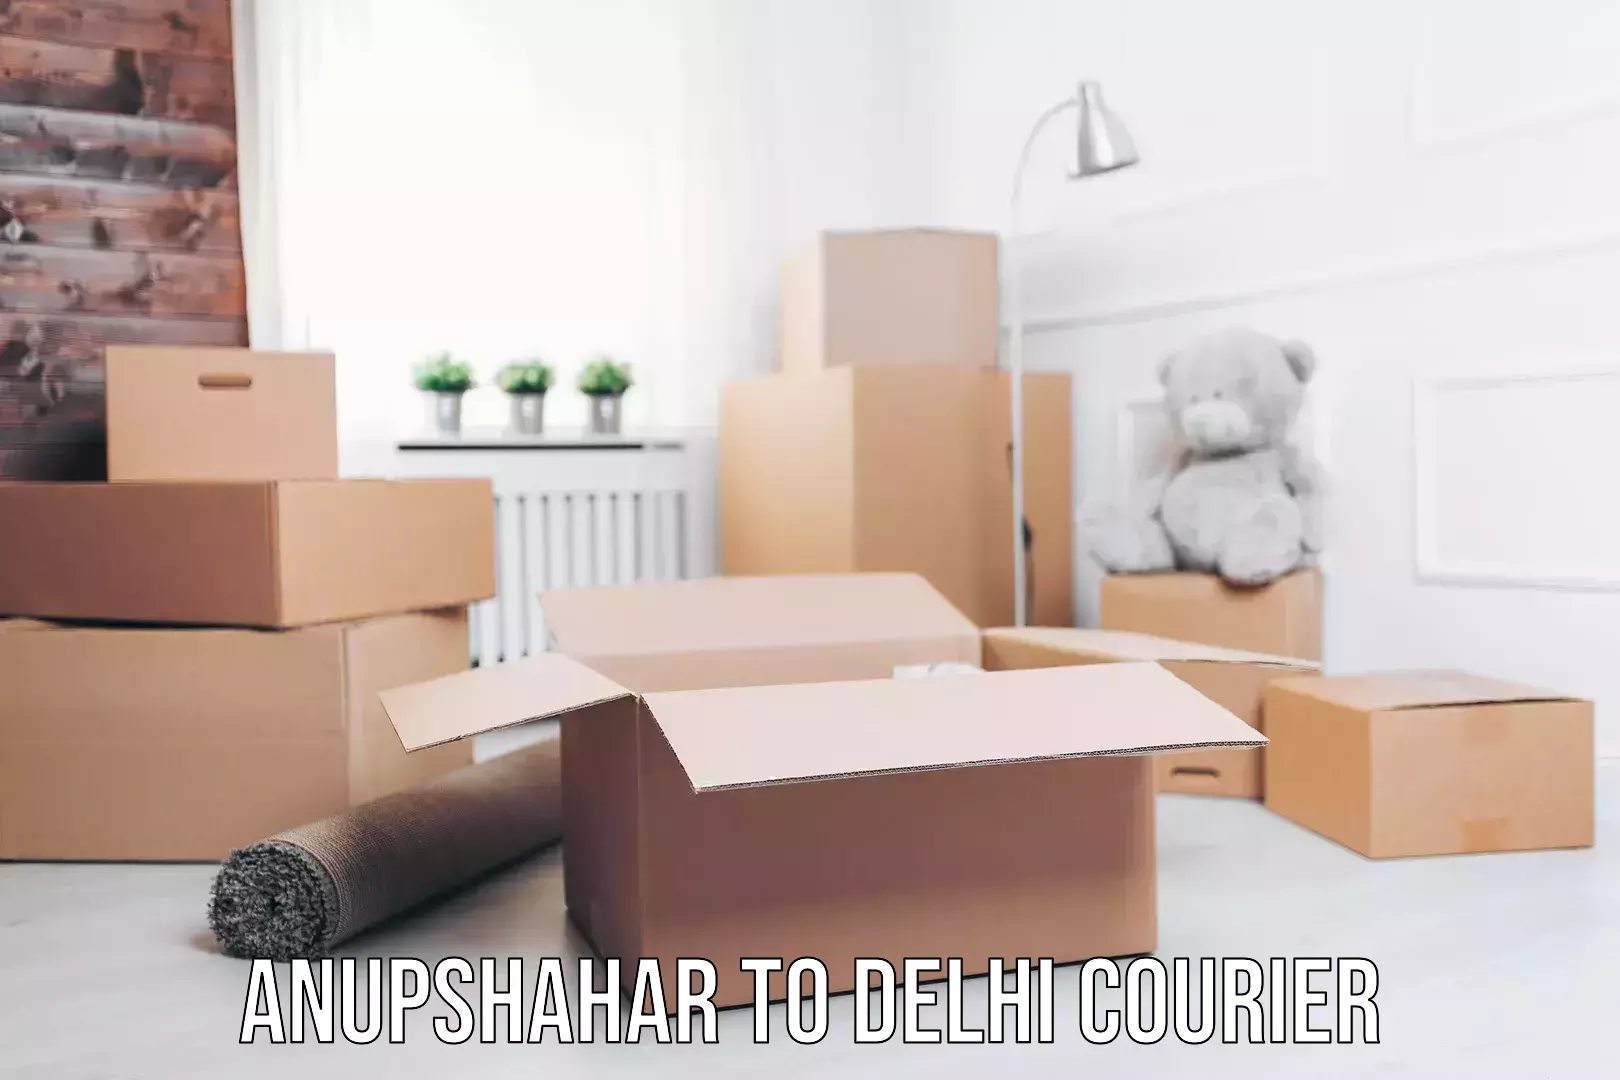 Advanced courier platforms Anupshahar to Delhi